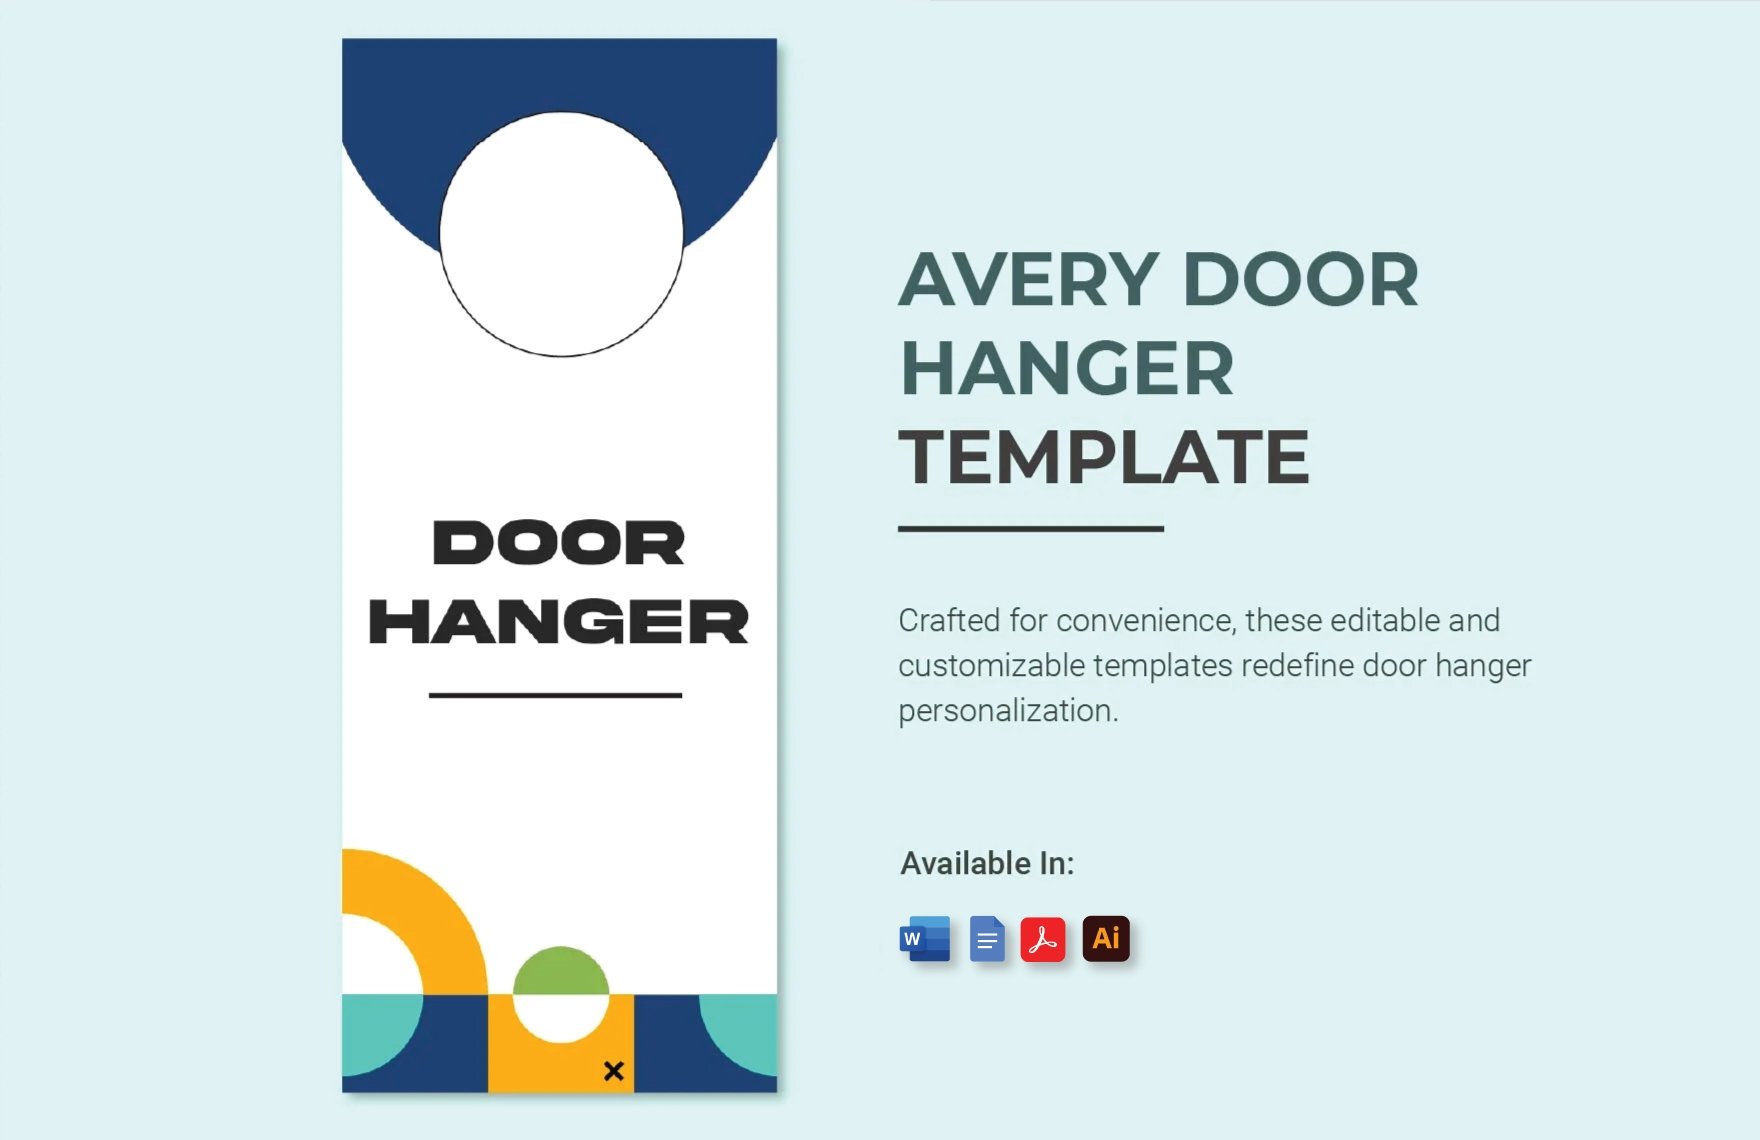 Free Avery Door Hanger Template in Word, Google Docs, PDF, Illustrator